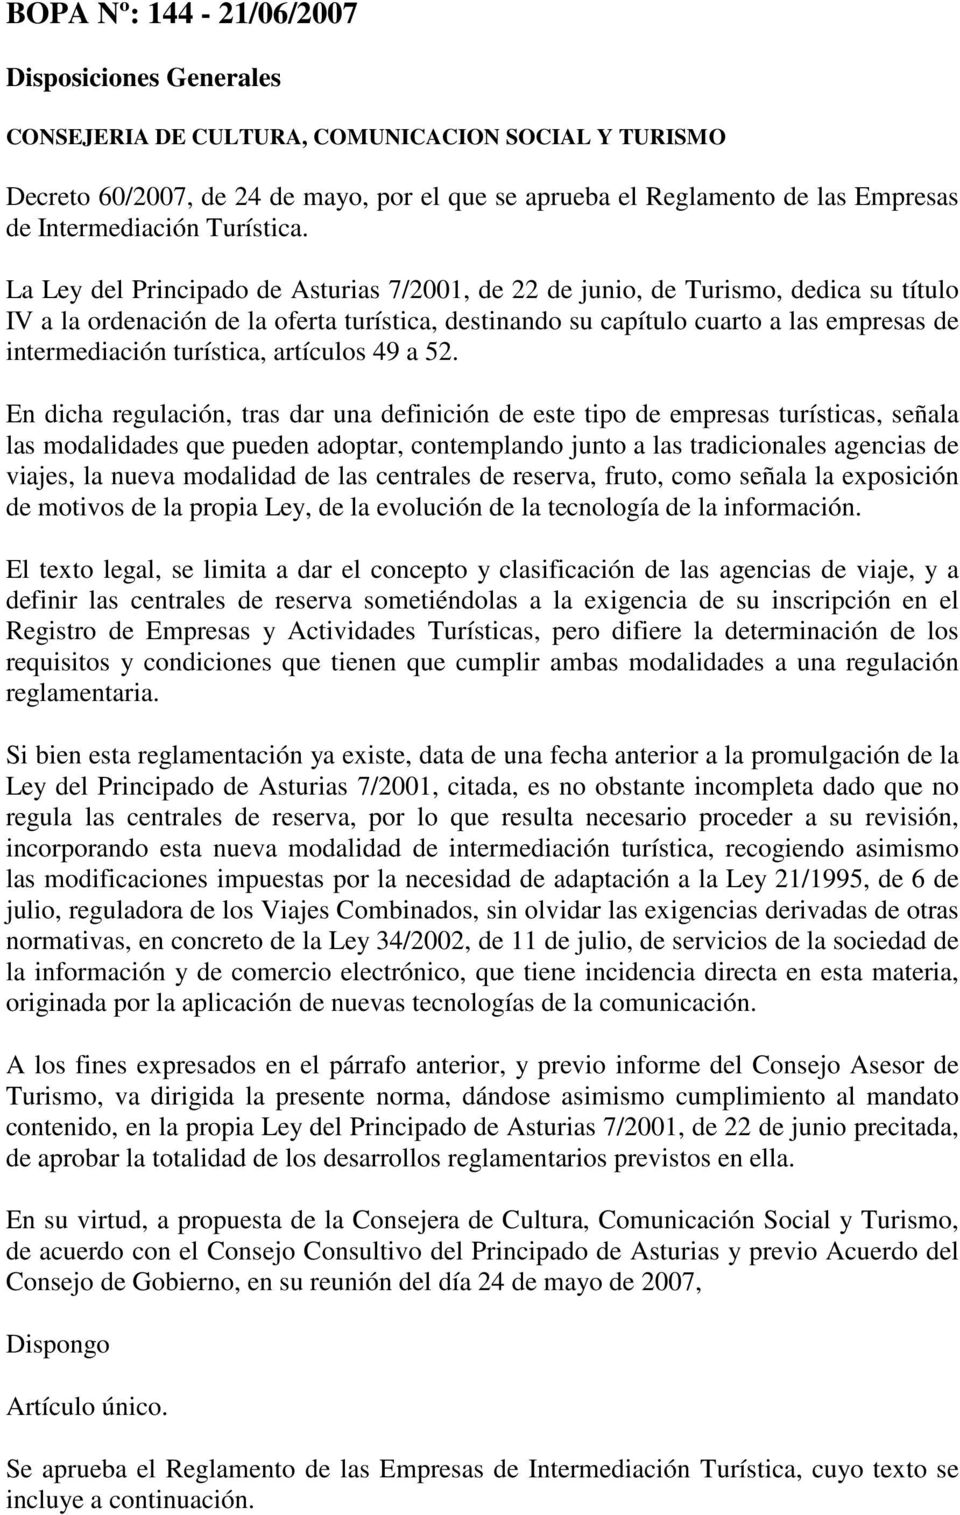 La Ley del Principado de Asturias 7/2001, de 22 de junio, de Turismo, dedica su título IV a la ordenación de la oferta turística, destinando su capítulo cuarto a las empresas de intermediación